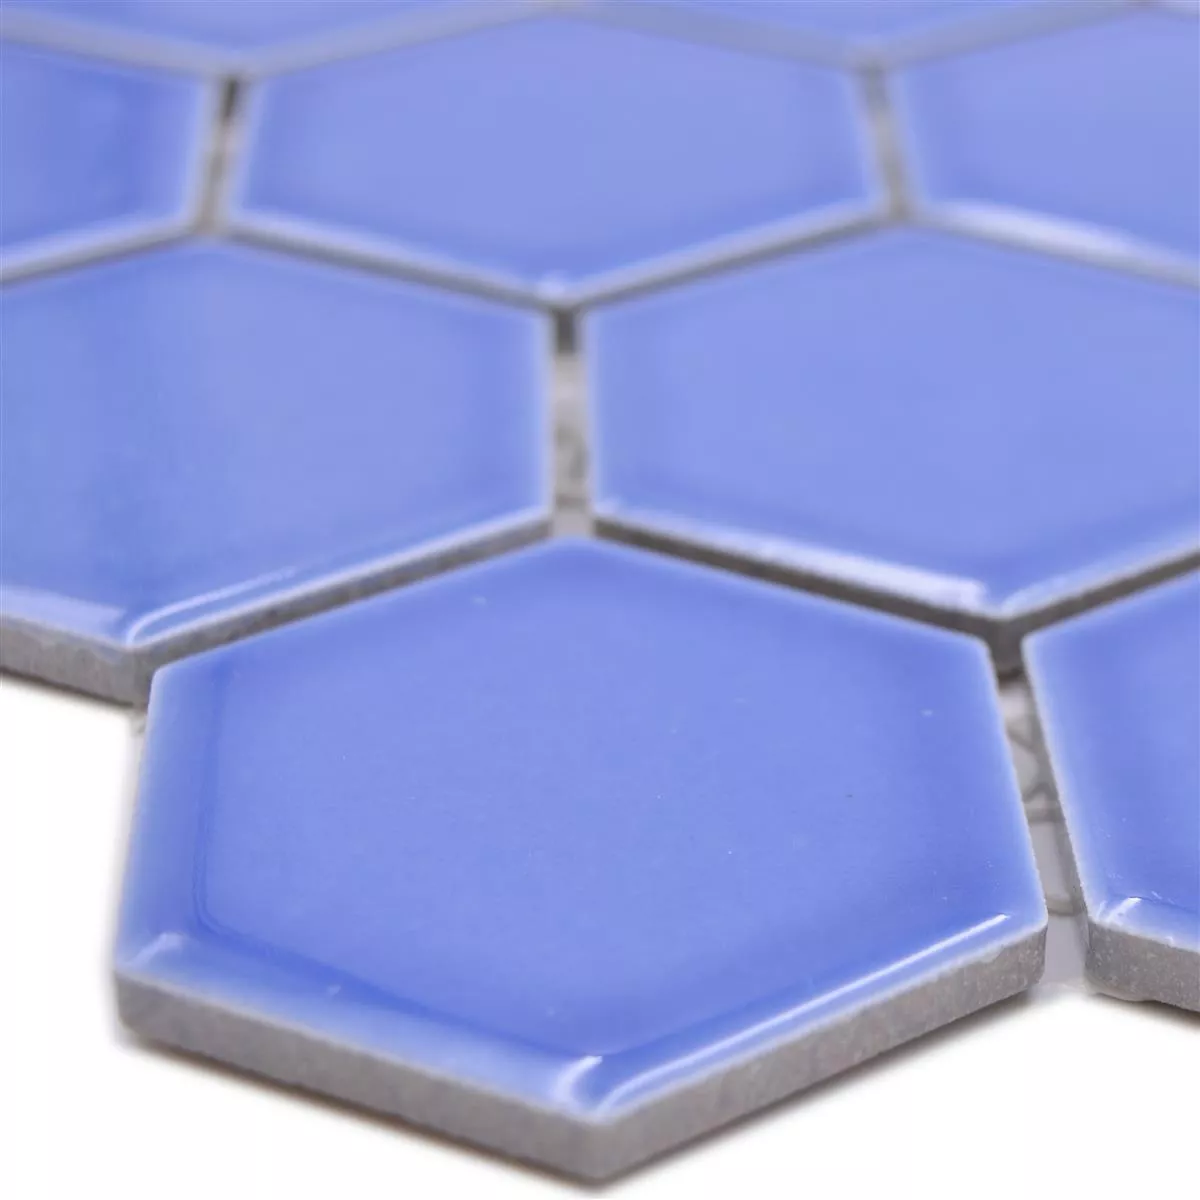 Campione da Ceramica Mosaico Salomon Esagono Blu Chiaro H51